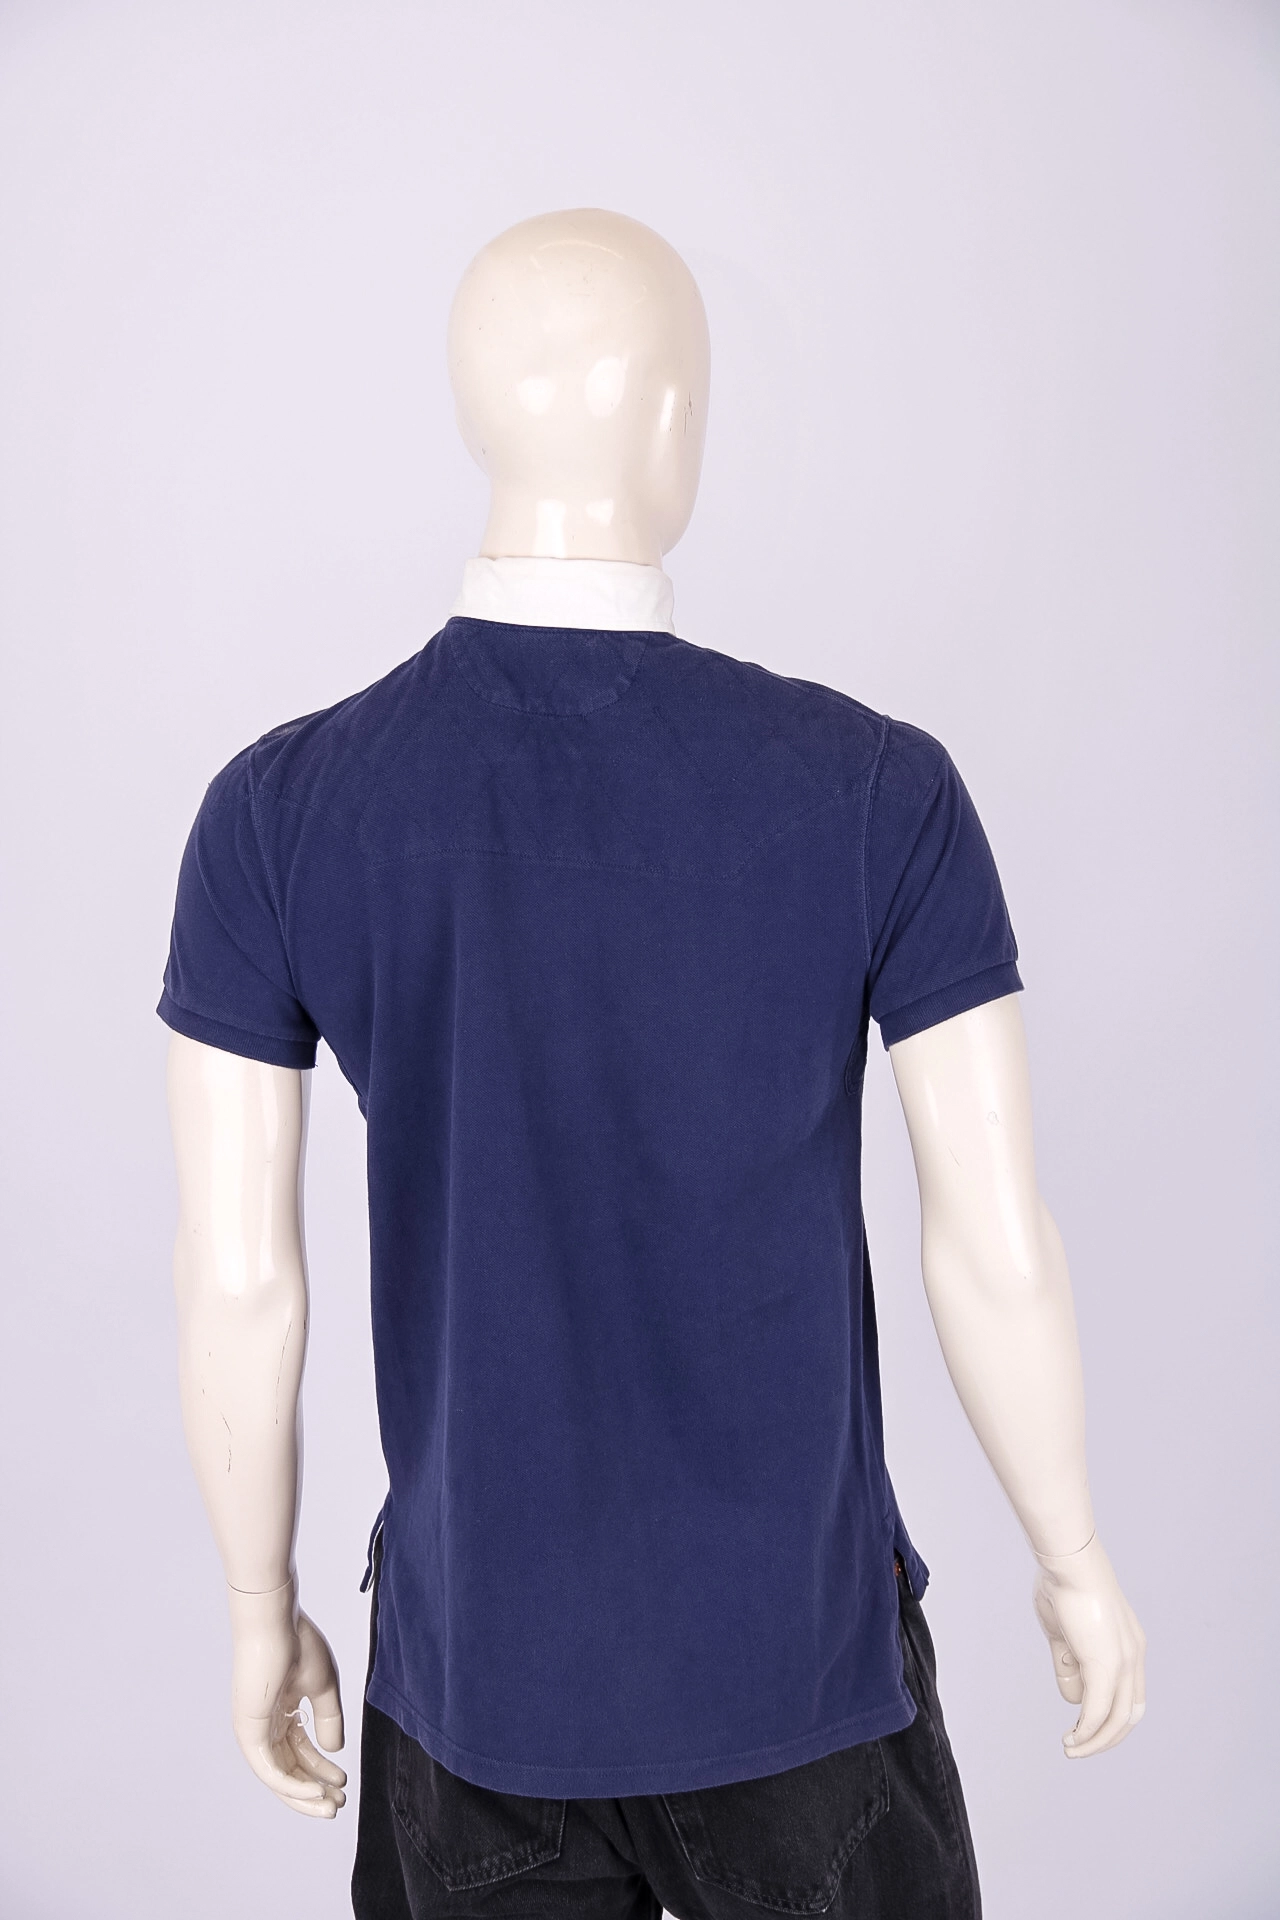 Camiseta Masculina Polo Ralph Lauren Azul Gola Branca M - Rehabita Brechó